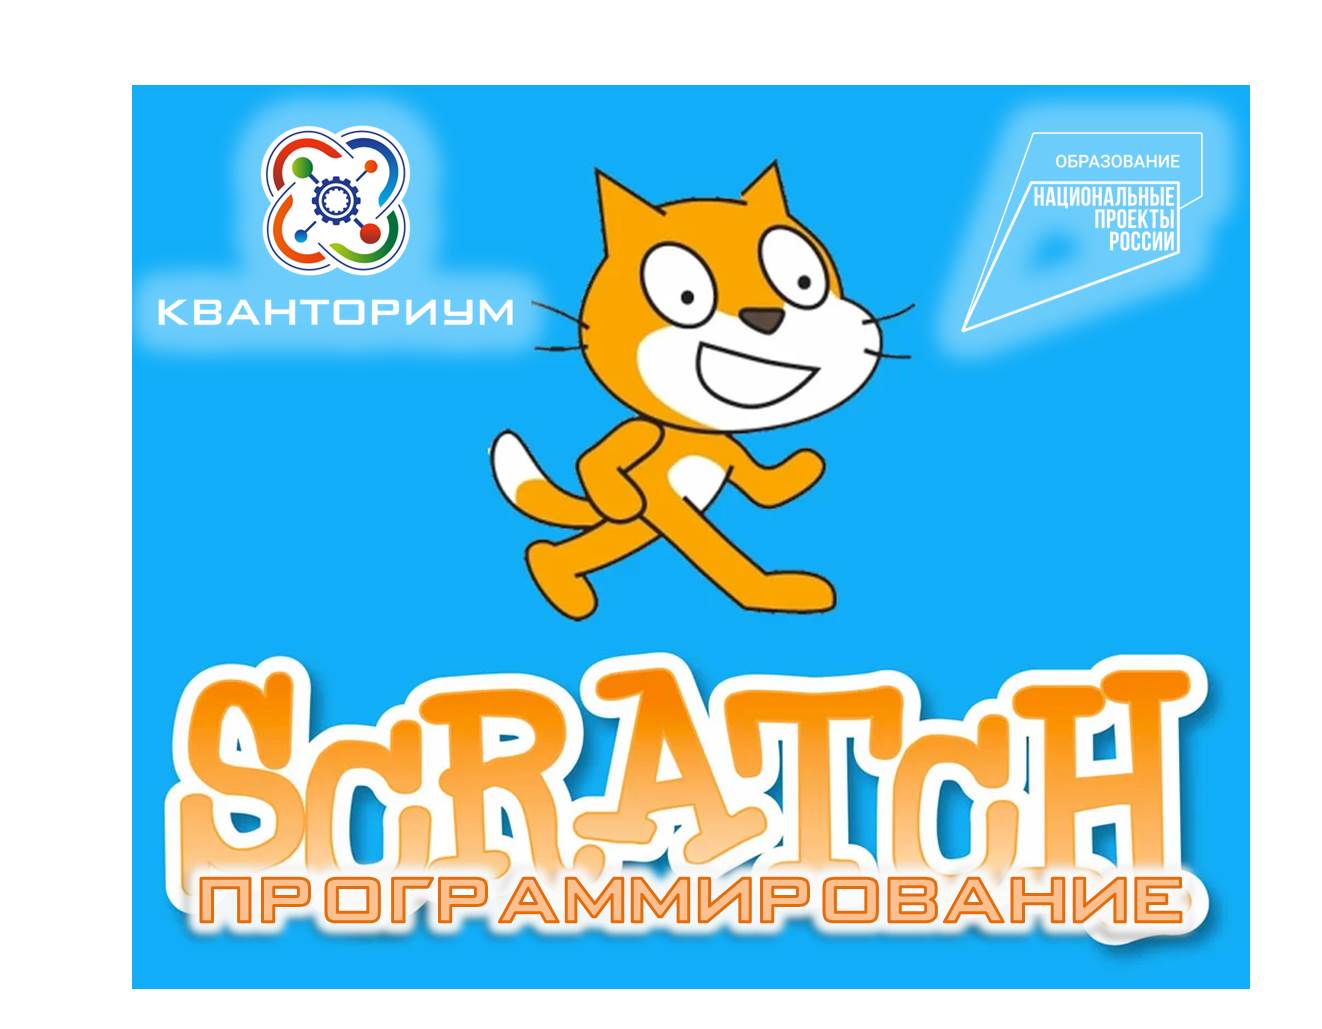 Scratch – программирование